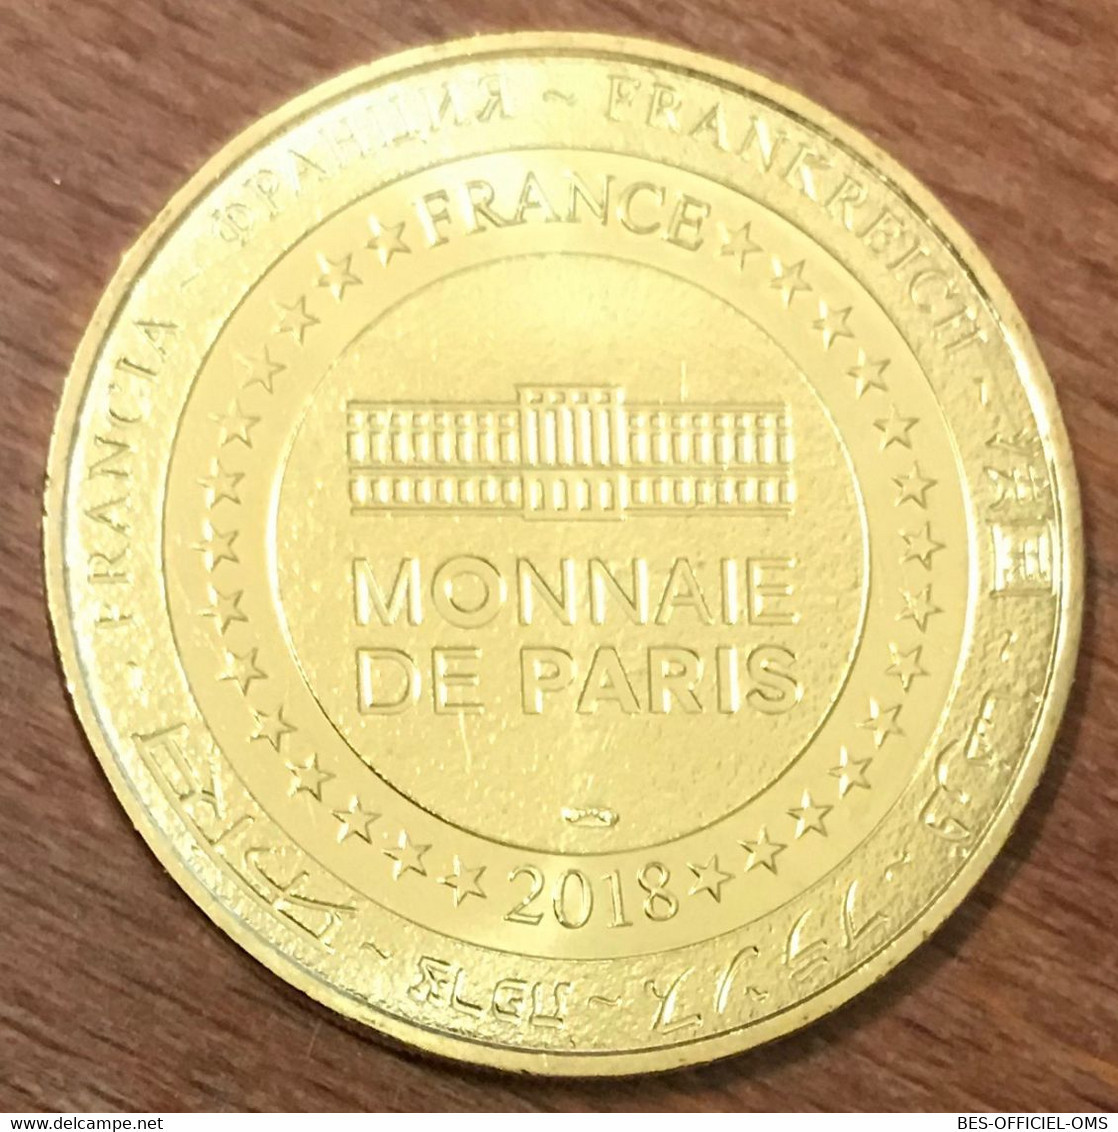 25 DOUBS ARC ET SENANS SALINE ROYALE N°5 MDP 2018 MÉDAILLE MONNAIE DE PARIS JETON TOURISTIQUE MEDALS TOKENS COINS - 2018